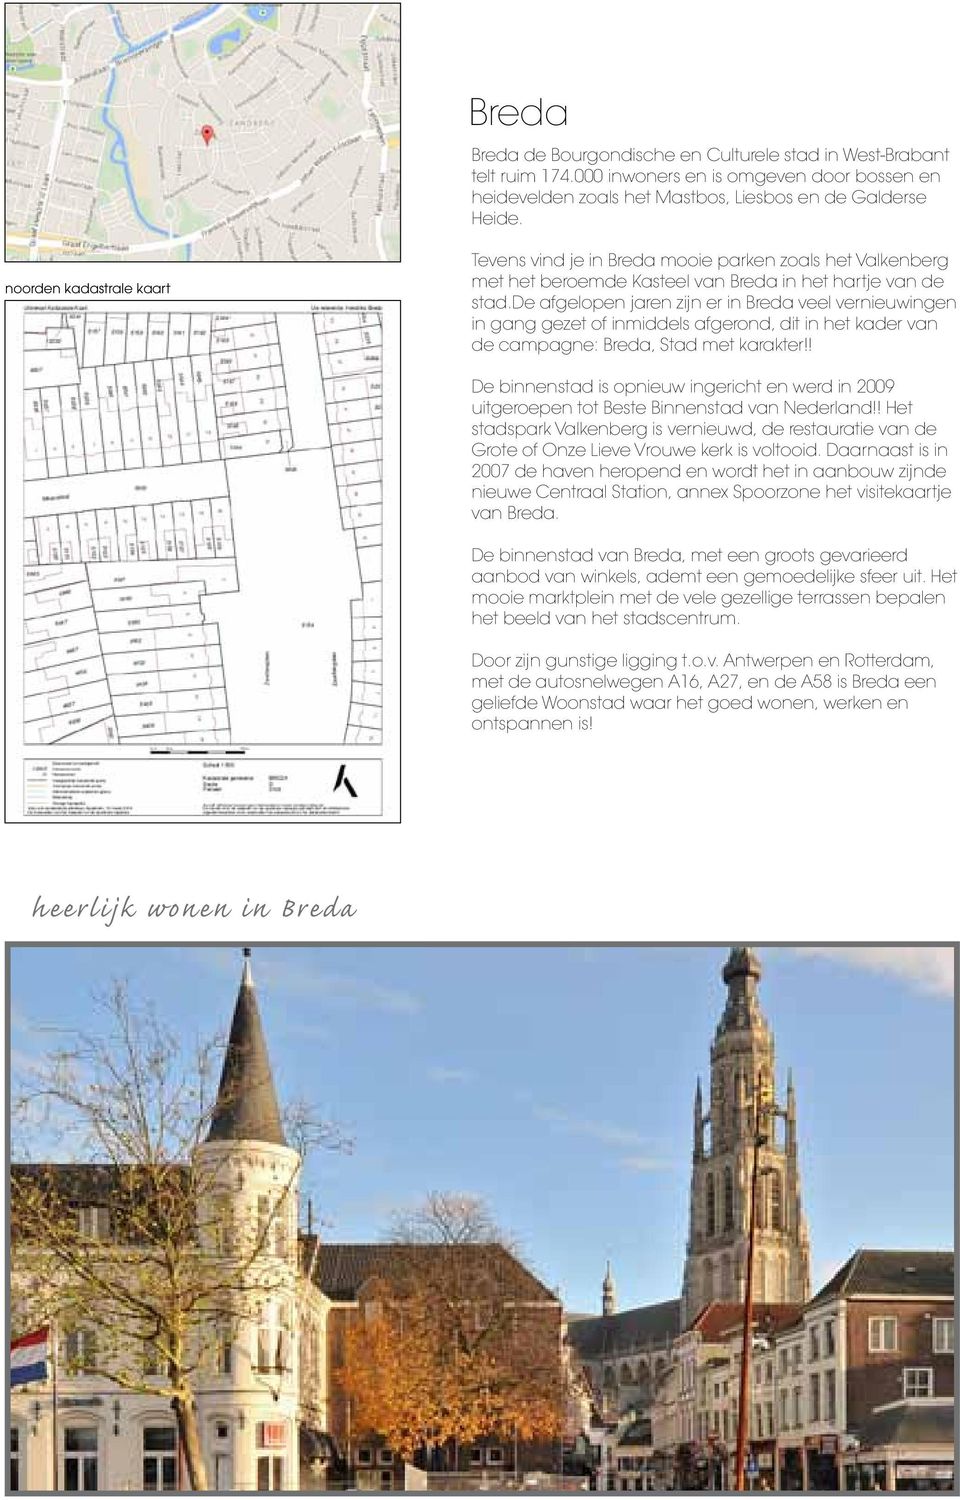 de afgelopen jaren zijn er in Breda veel vernieuwingen in gang gezet of inmiddels afgerond, dit in het kader van de campagne: Breda, Stad met karakter!